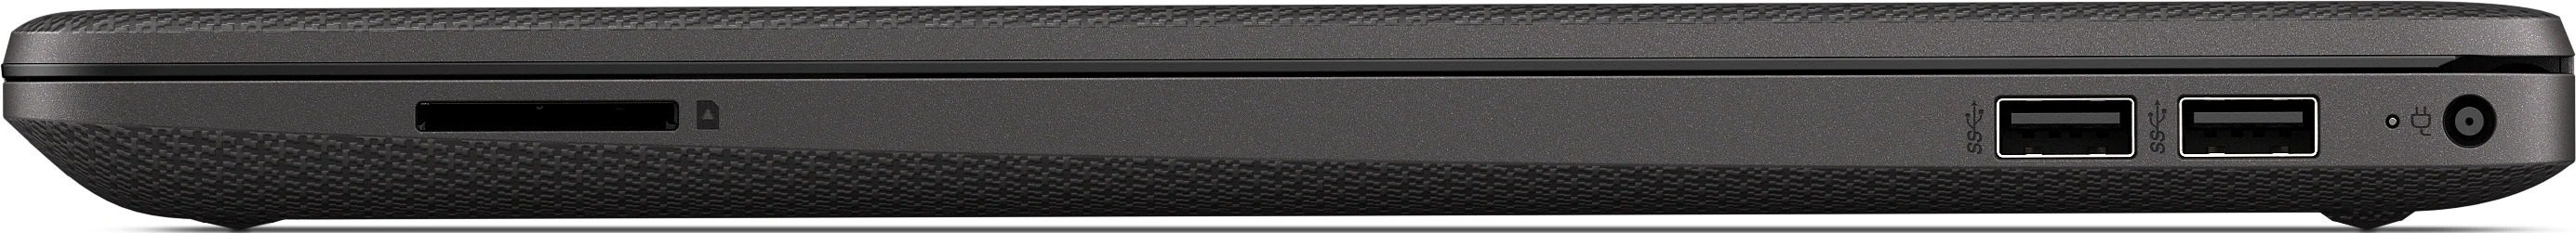 Ноутбук HP 255 G8 R3-3250U 2.3GHz,15.6" FHD (1920x1080) AG,8Gb DDR4(1),256Gb SSD,No ODD,41Wh,1.9kg,1y,Dark Ash Silver,Dos-39312